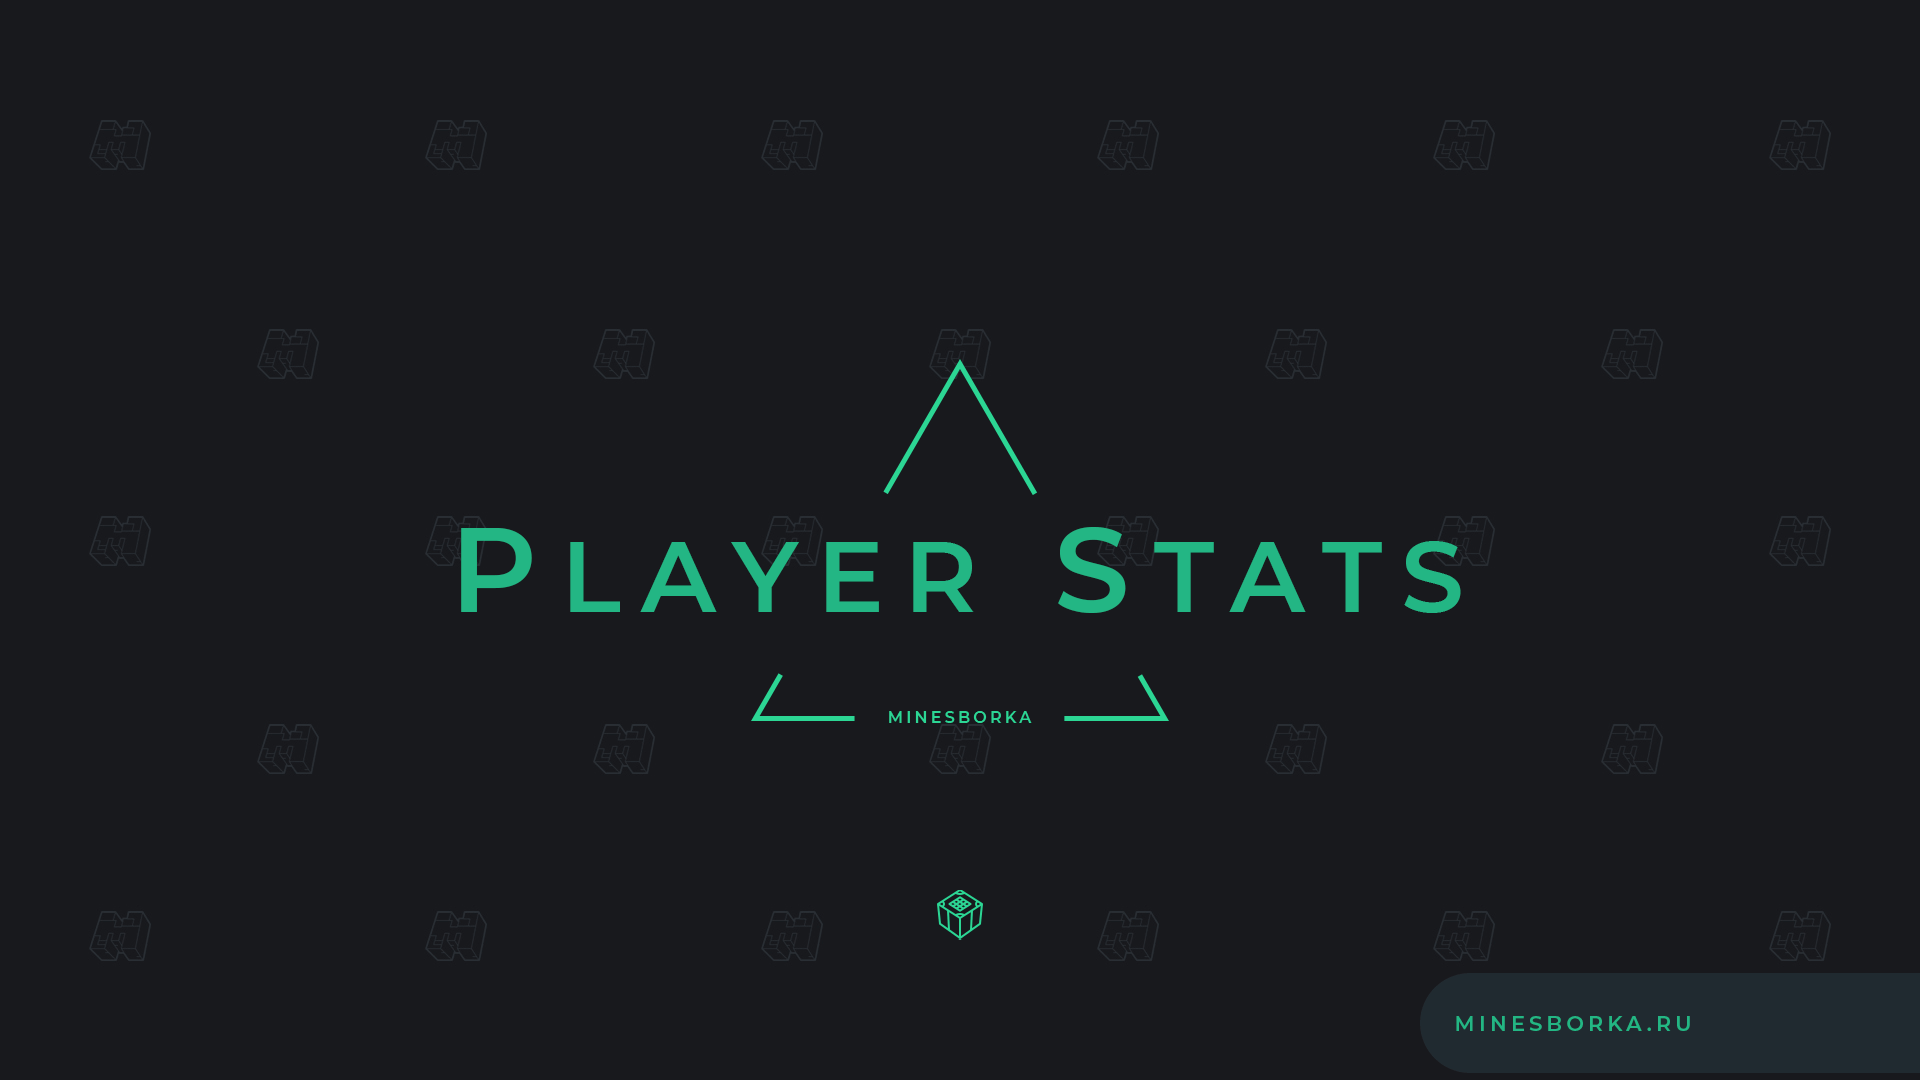 Скачать плагин PlayerStats / Плагин на статистику игрока в отдельном меню для сервера Minecraft